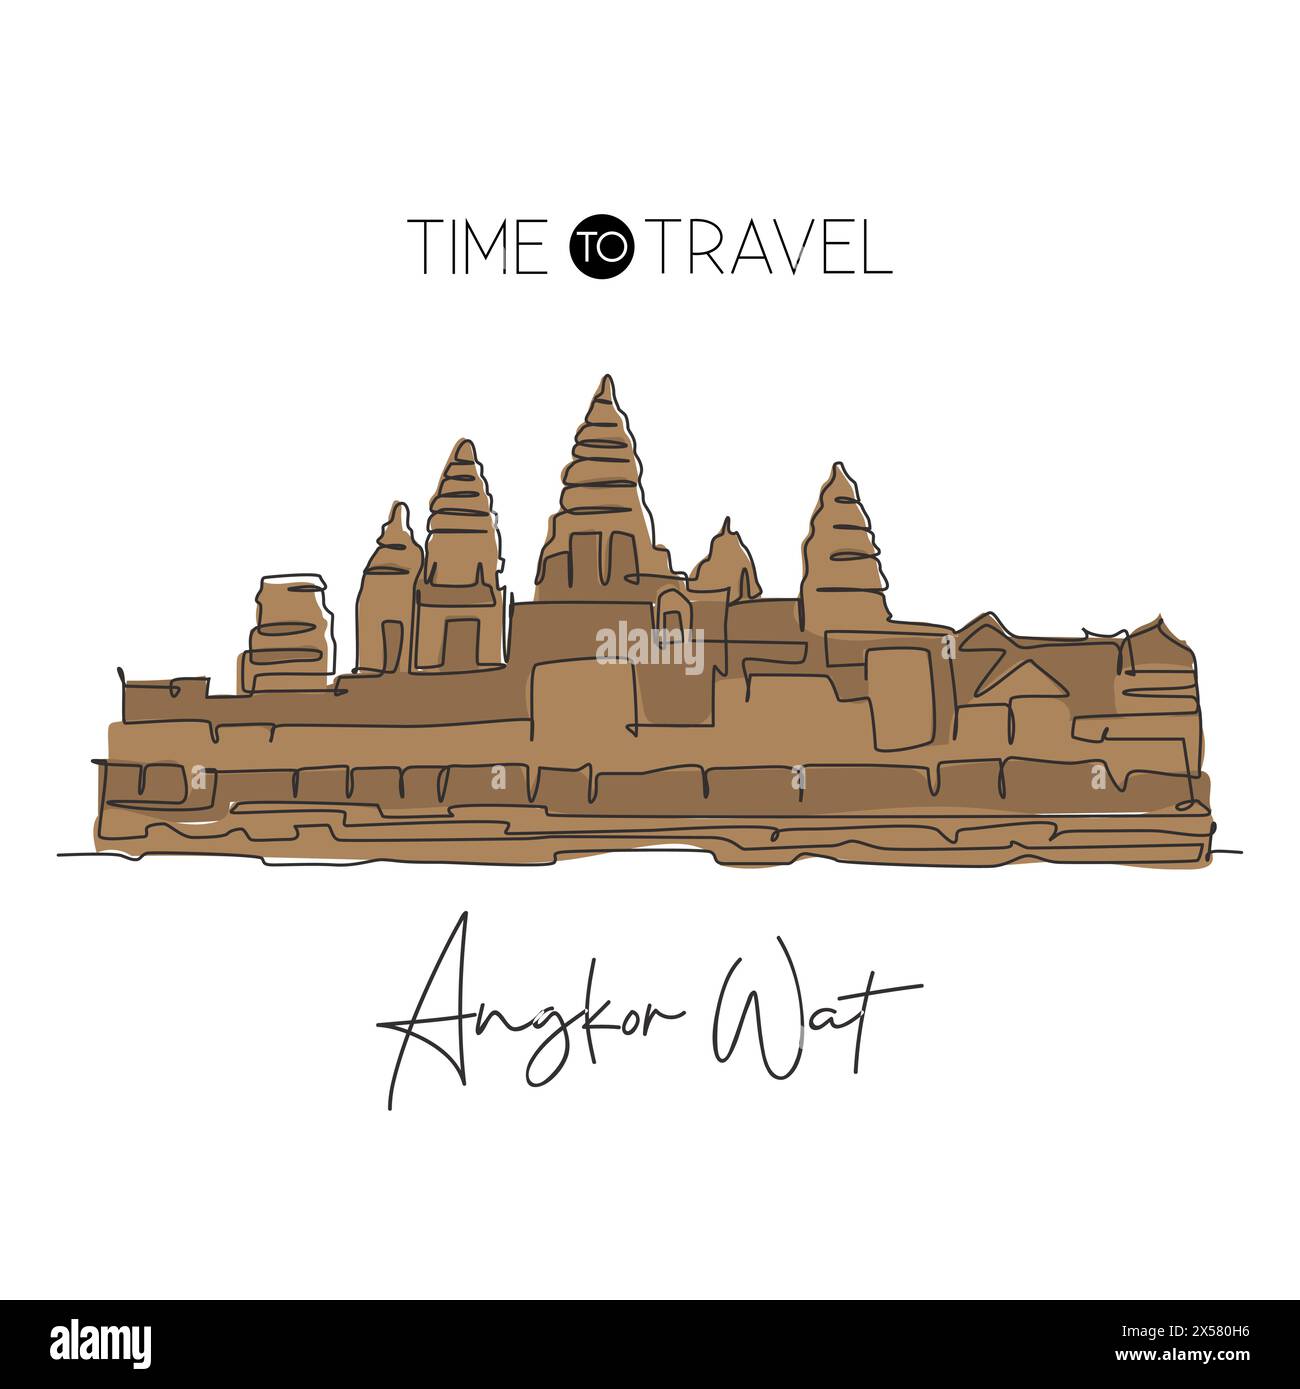 Einfache durchgehende Linienzeichnung Angkor Wat Tempels Wahrzeichen. Berühmter Ort in Siem Reap, Kambodscha. Weltreise Home Art Wanddekor Posterdruck. M Stock Vektor